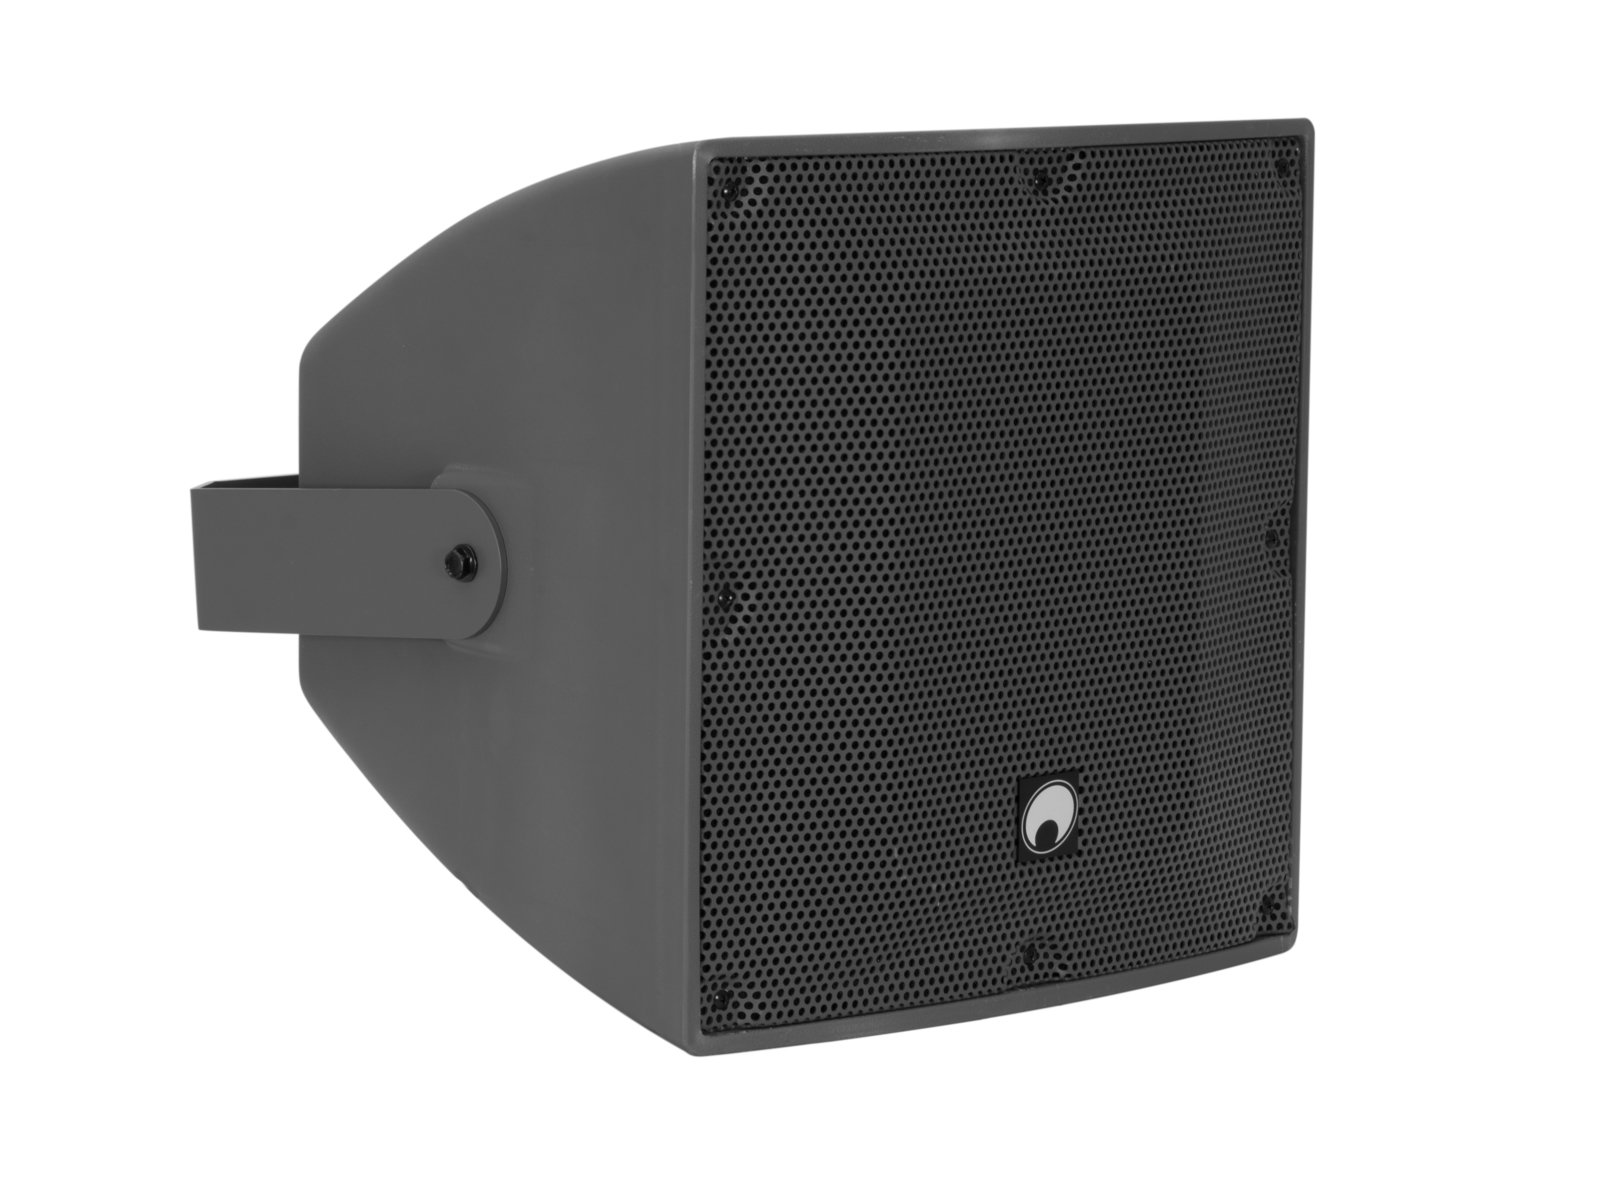 OMNITRONIC ODX-212TM Installation Speaker 100V dark grey